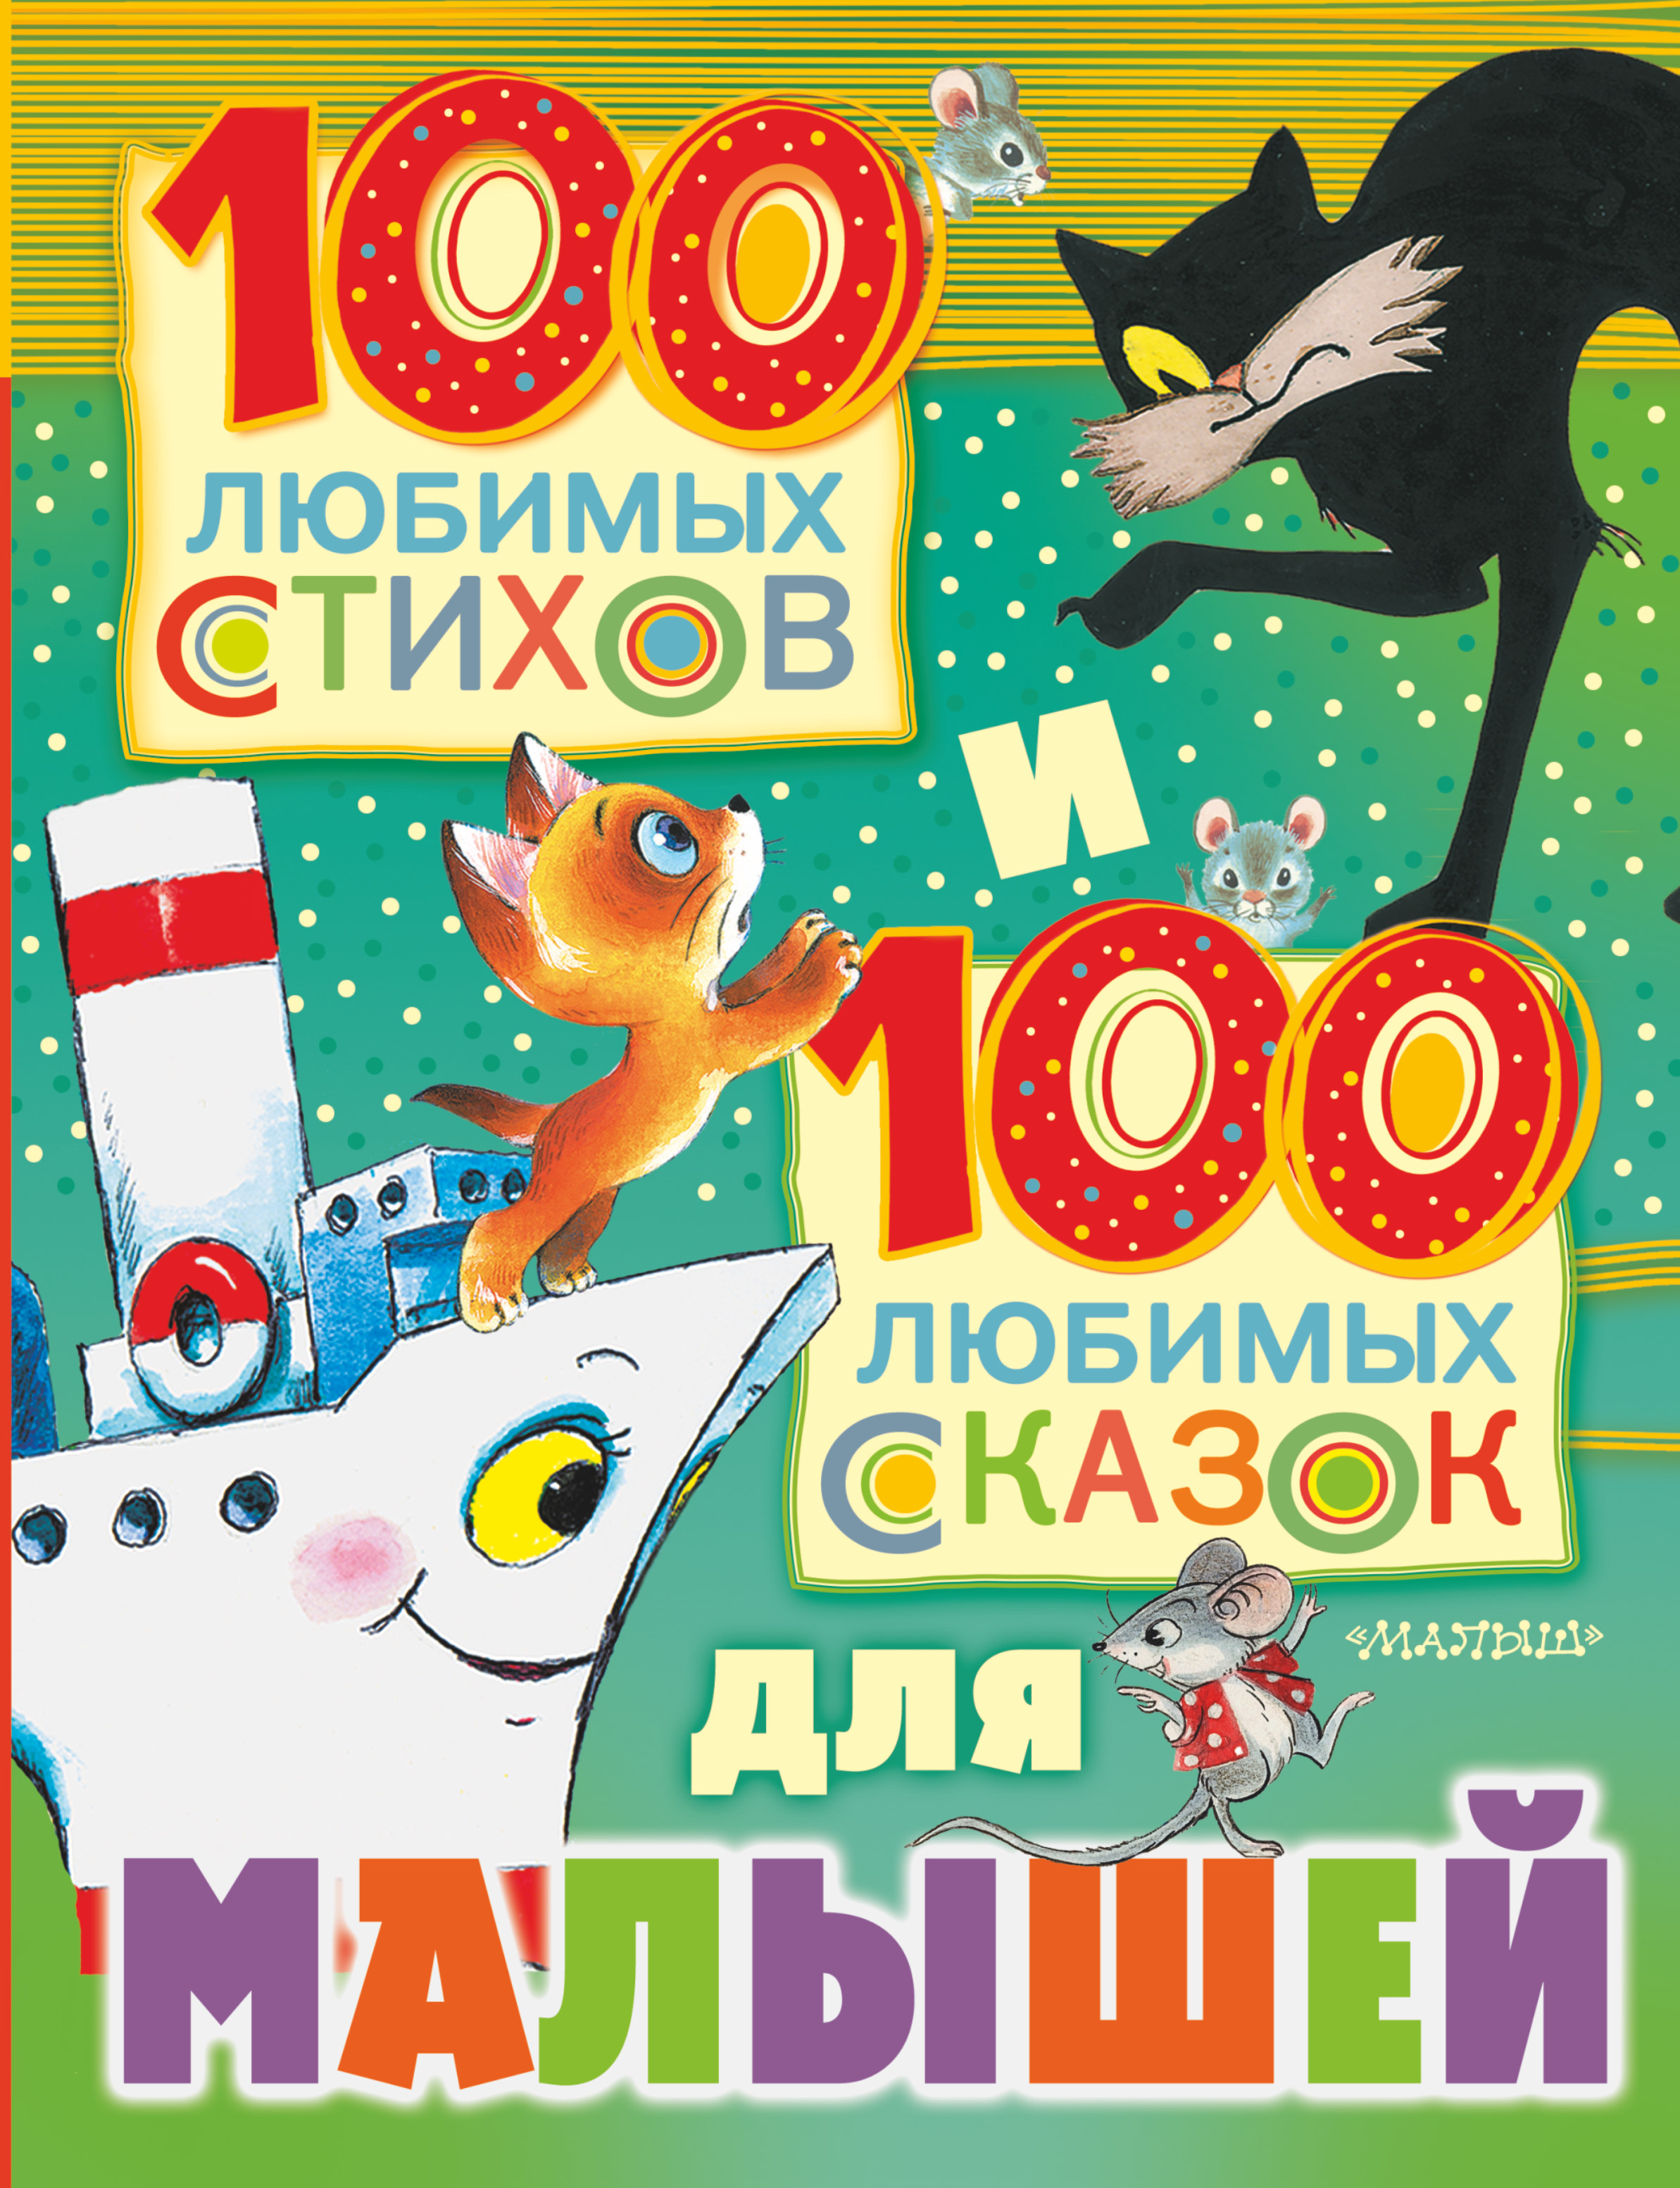 100 любимых стихов и 100 любимых сказок для малышей дмитриева в 100 любимых сказок 100 любимых стихов и загадок